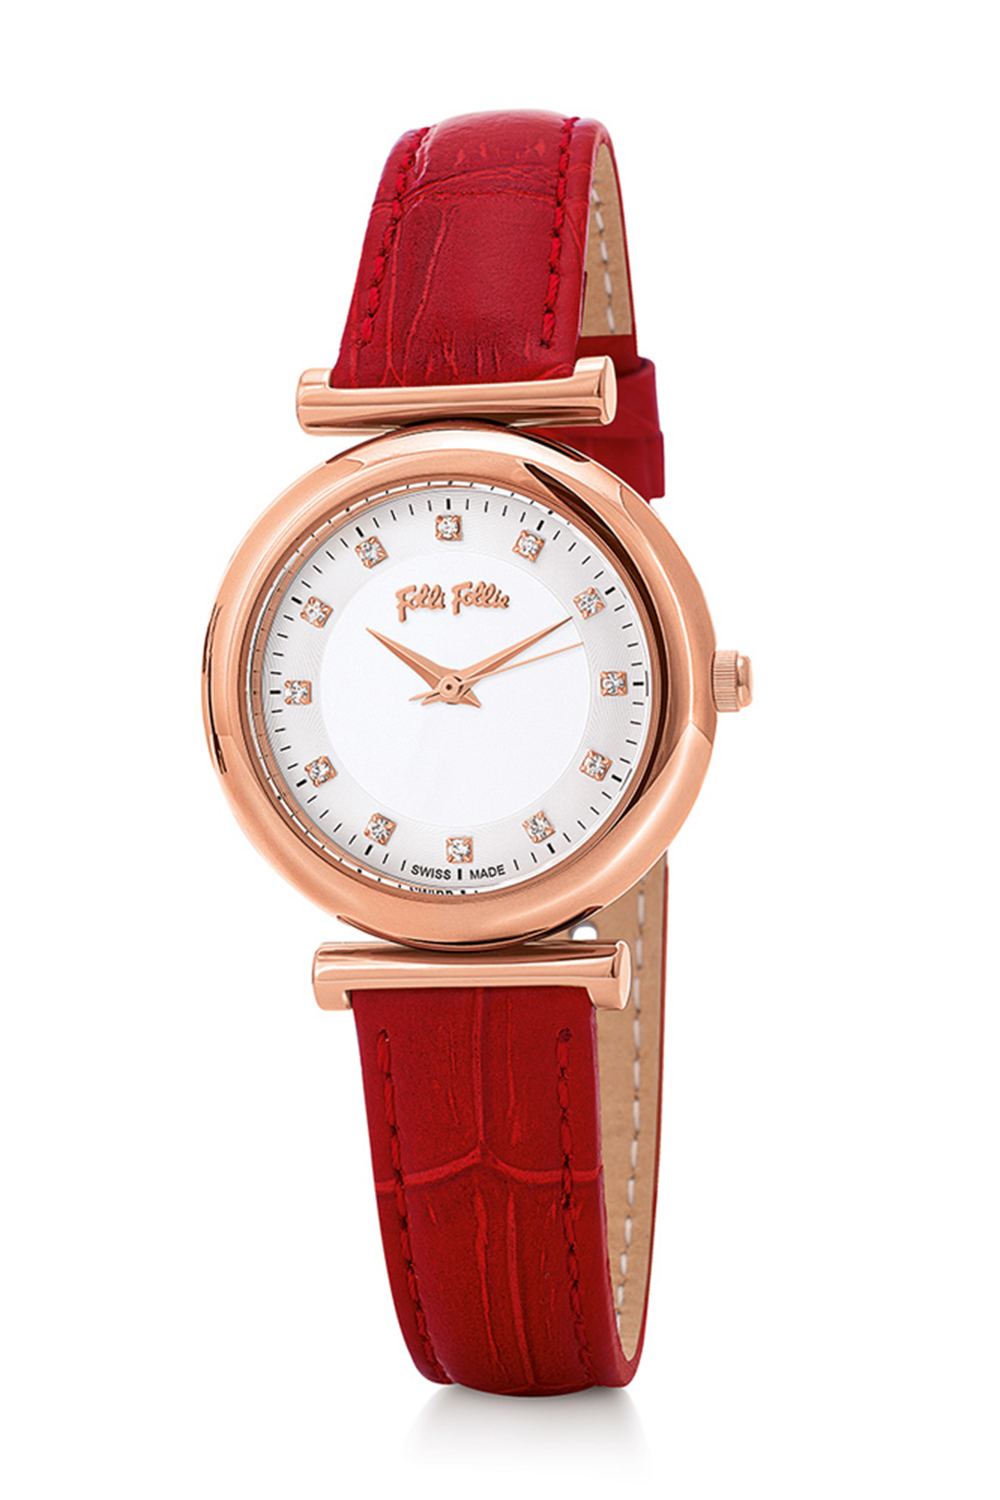 FOLLI FOLLIE – Γυναικείο ρολόι με δερμάτινο λουράκι FOLLI FOLLIE SPARKLE CHIC κόκκινο WF16R022SSS-RE